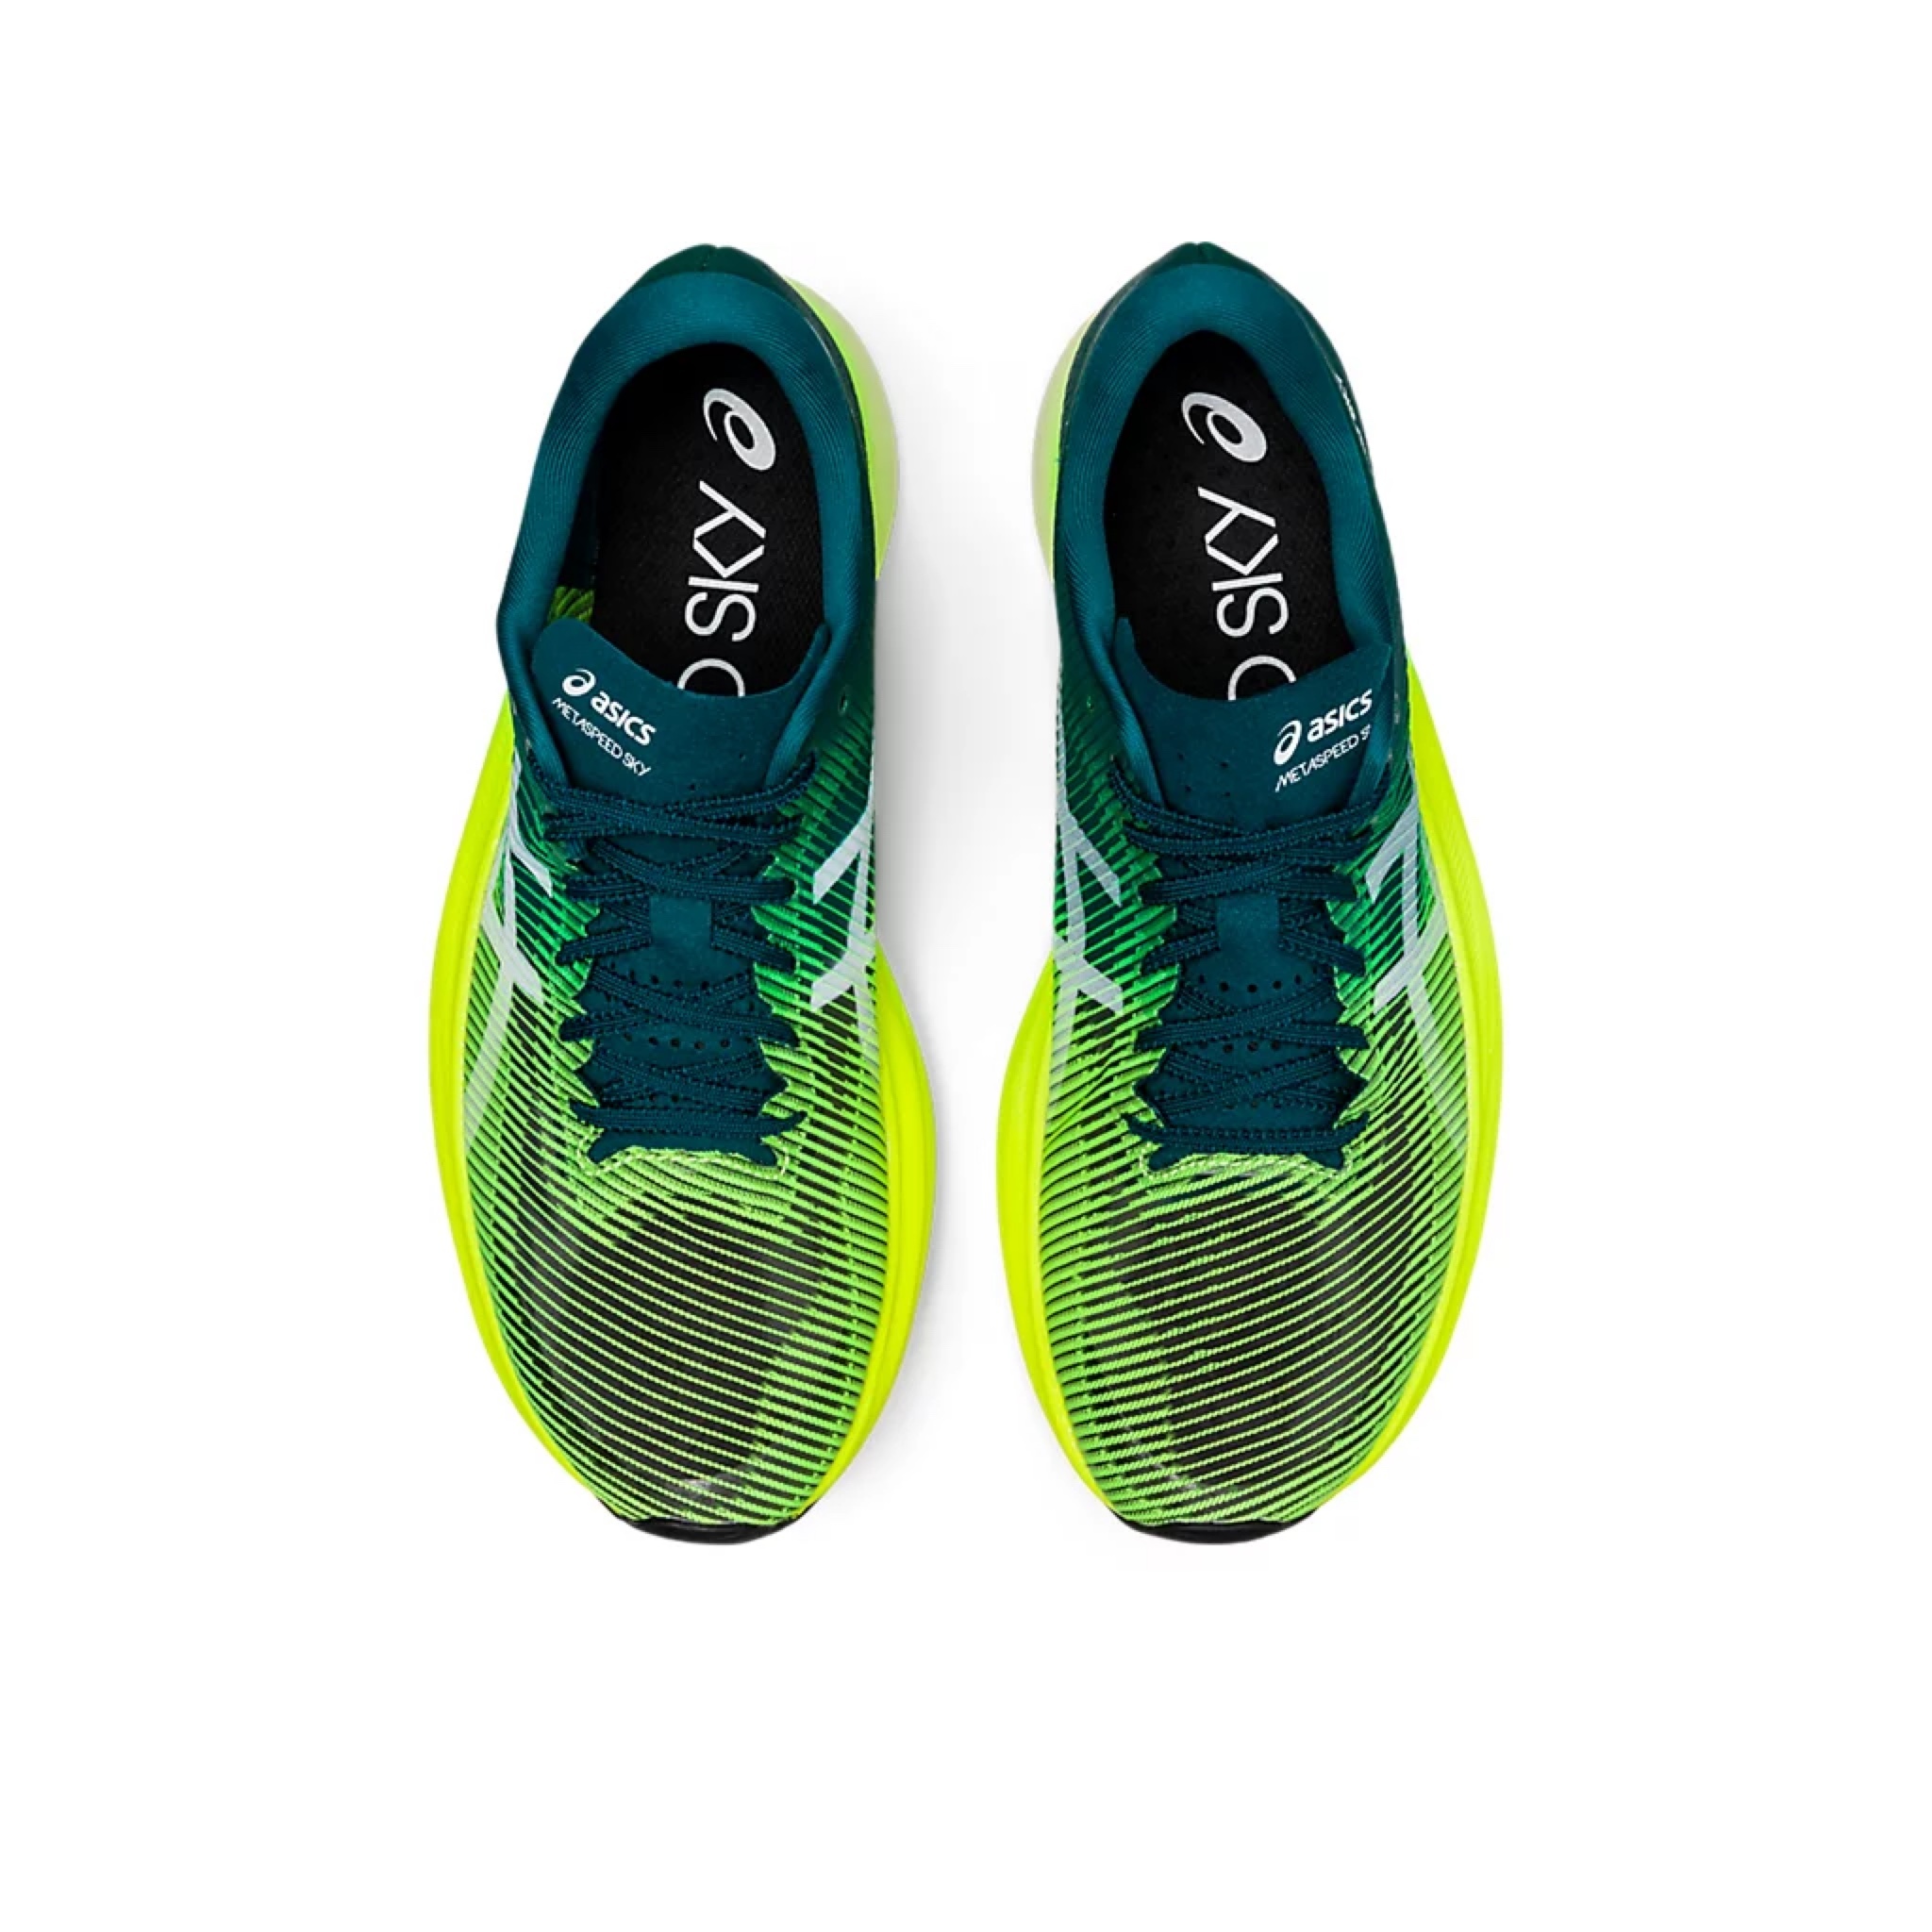 💥日本直送】Asics METASPEED SKY+ 跑步鞋綠黃色22.5cm - 30.0cm